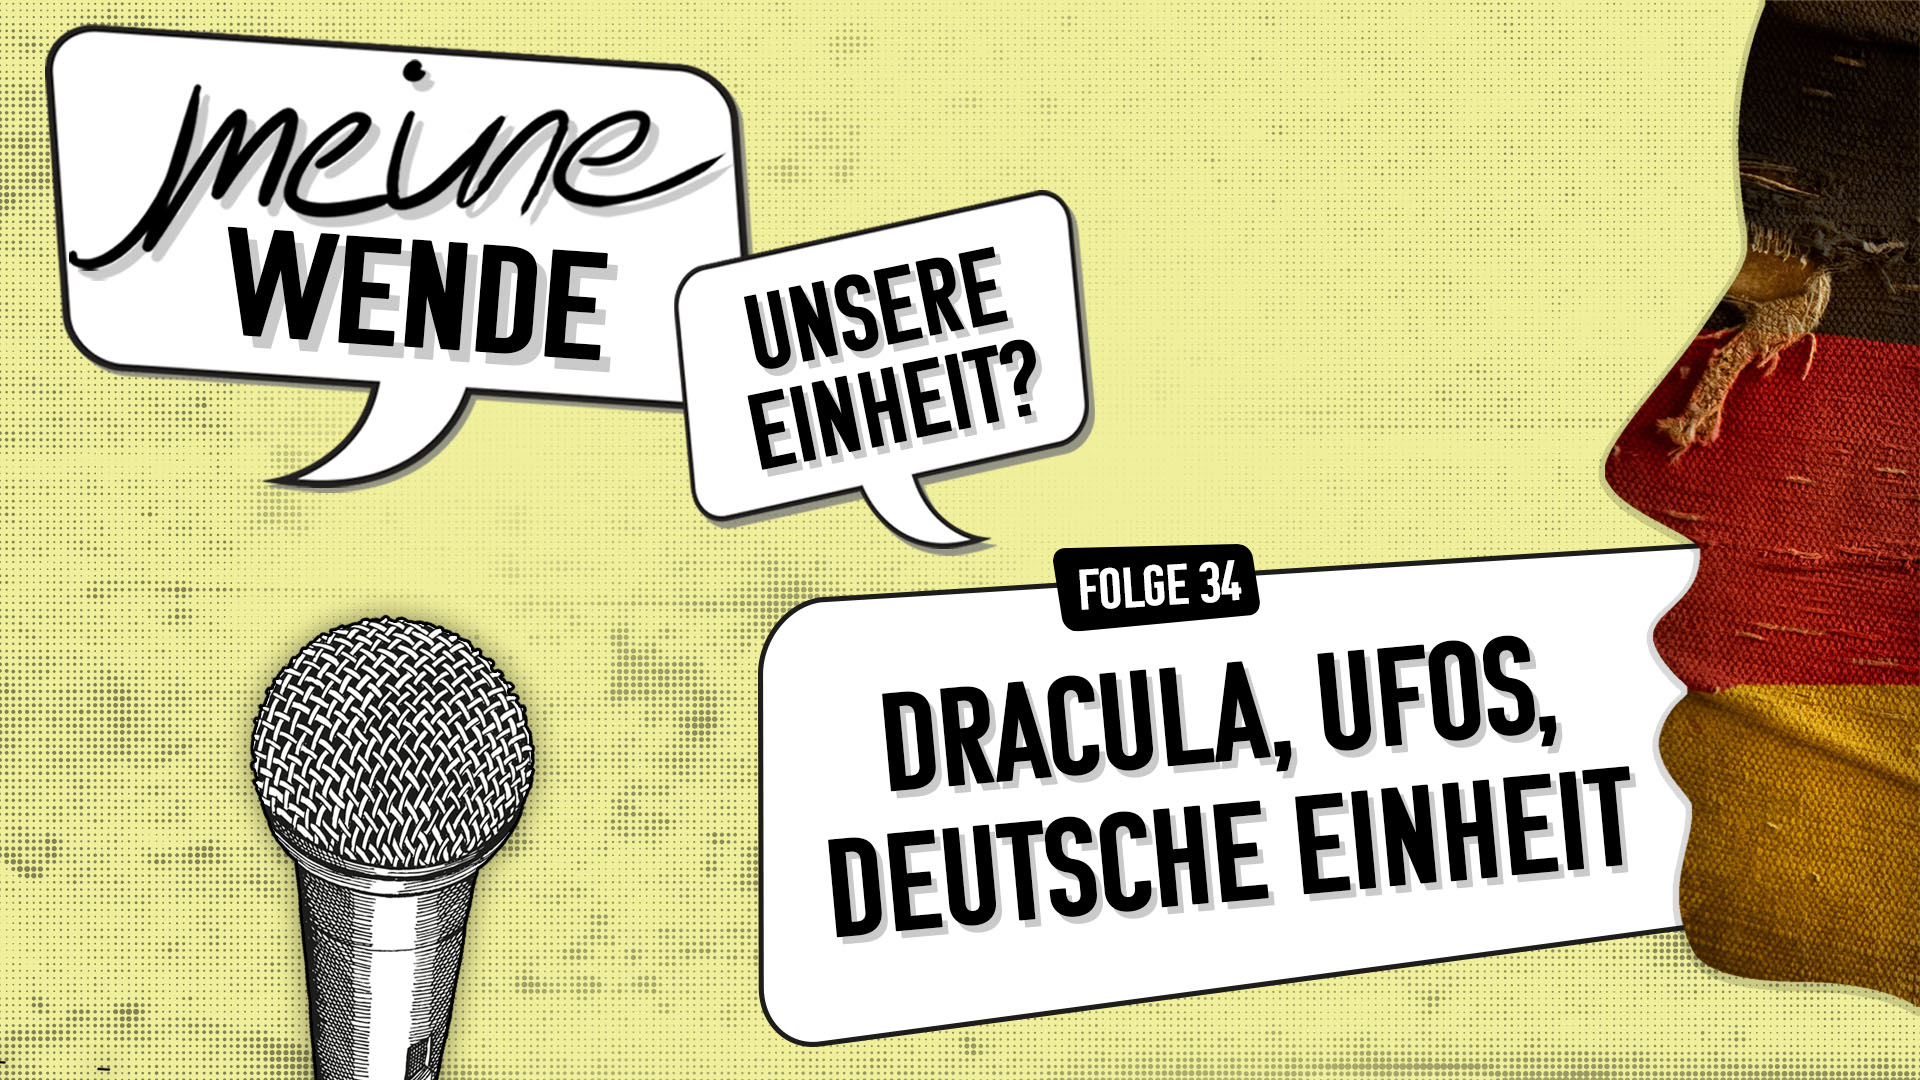 Folge 34 Dracula, UFOs, Deutsche Einheit